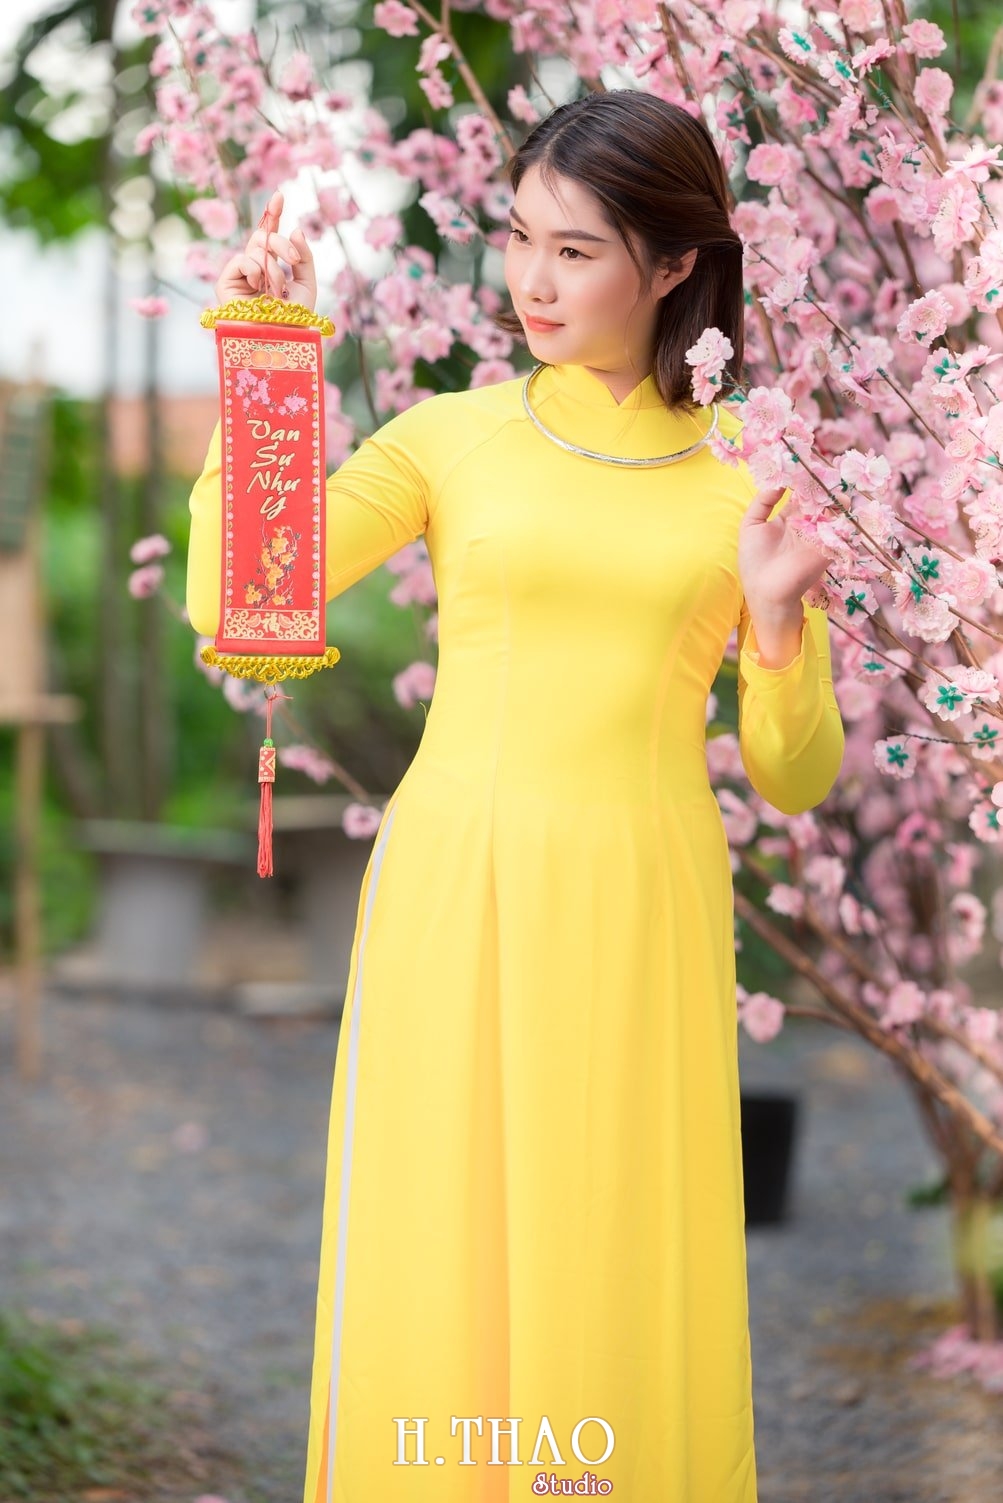 Ao dai tet 8 - Top 40 ảnh áo dài chụp với Hoa đào, hoa mai tết tuyệt đẹp- HThao Studio